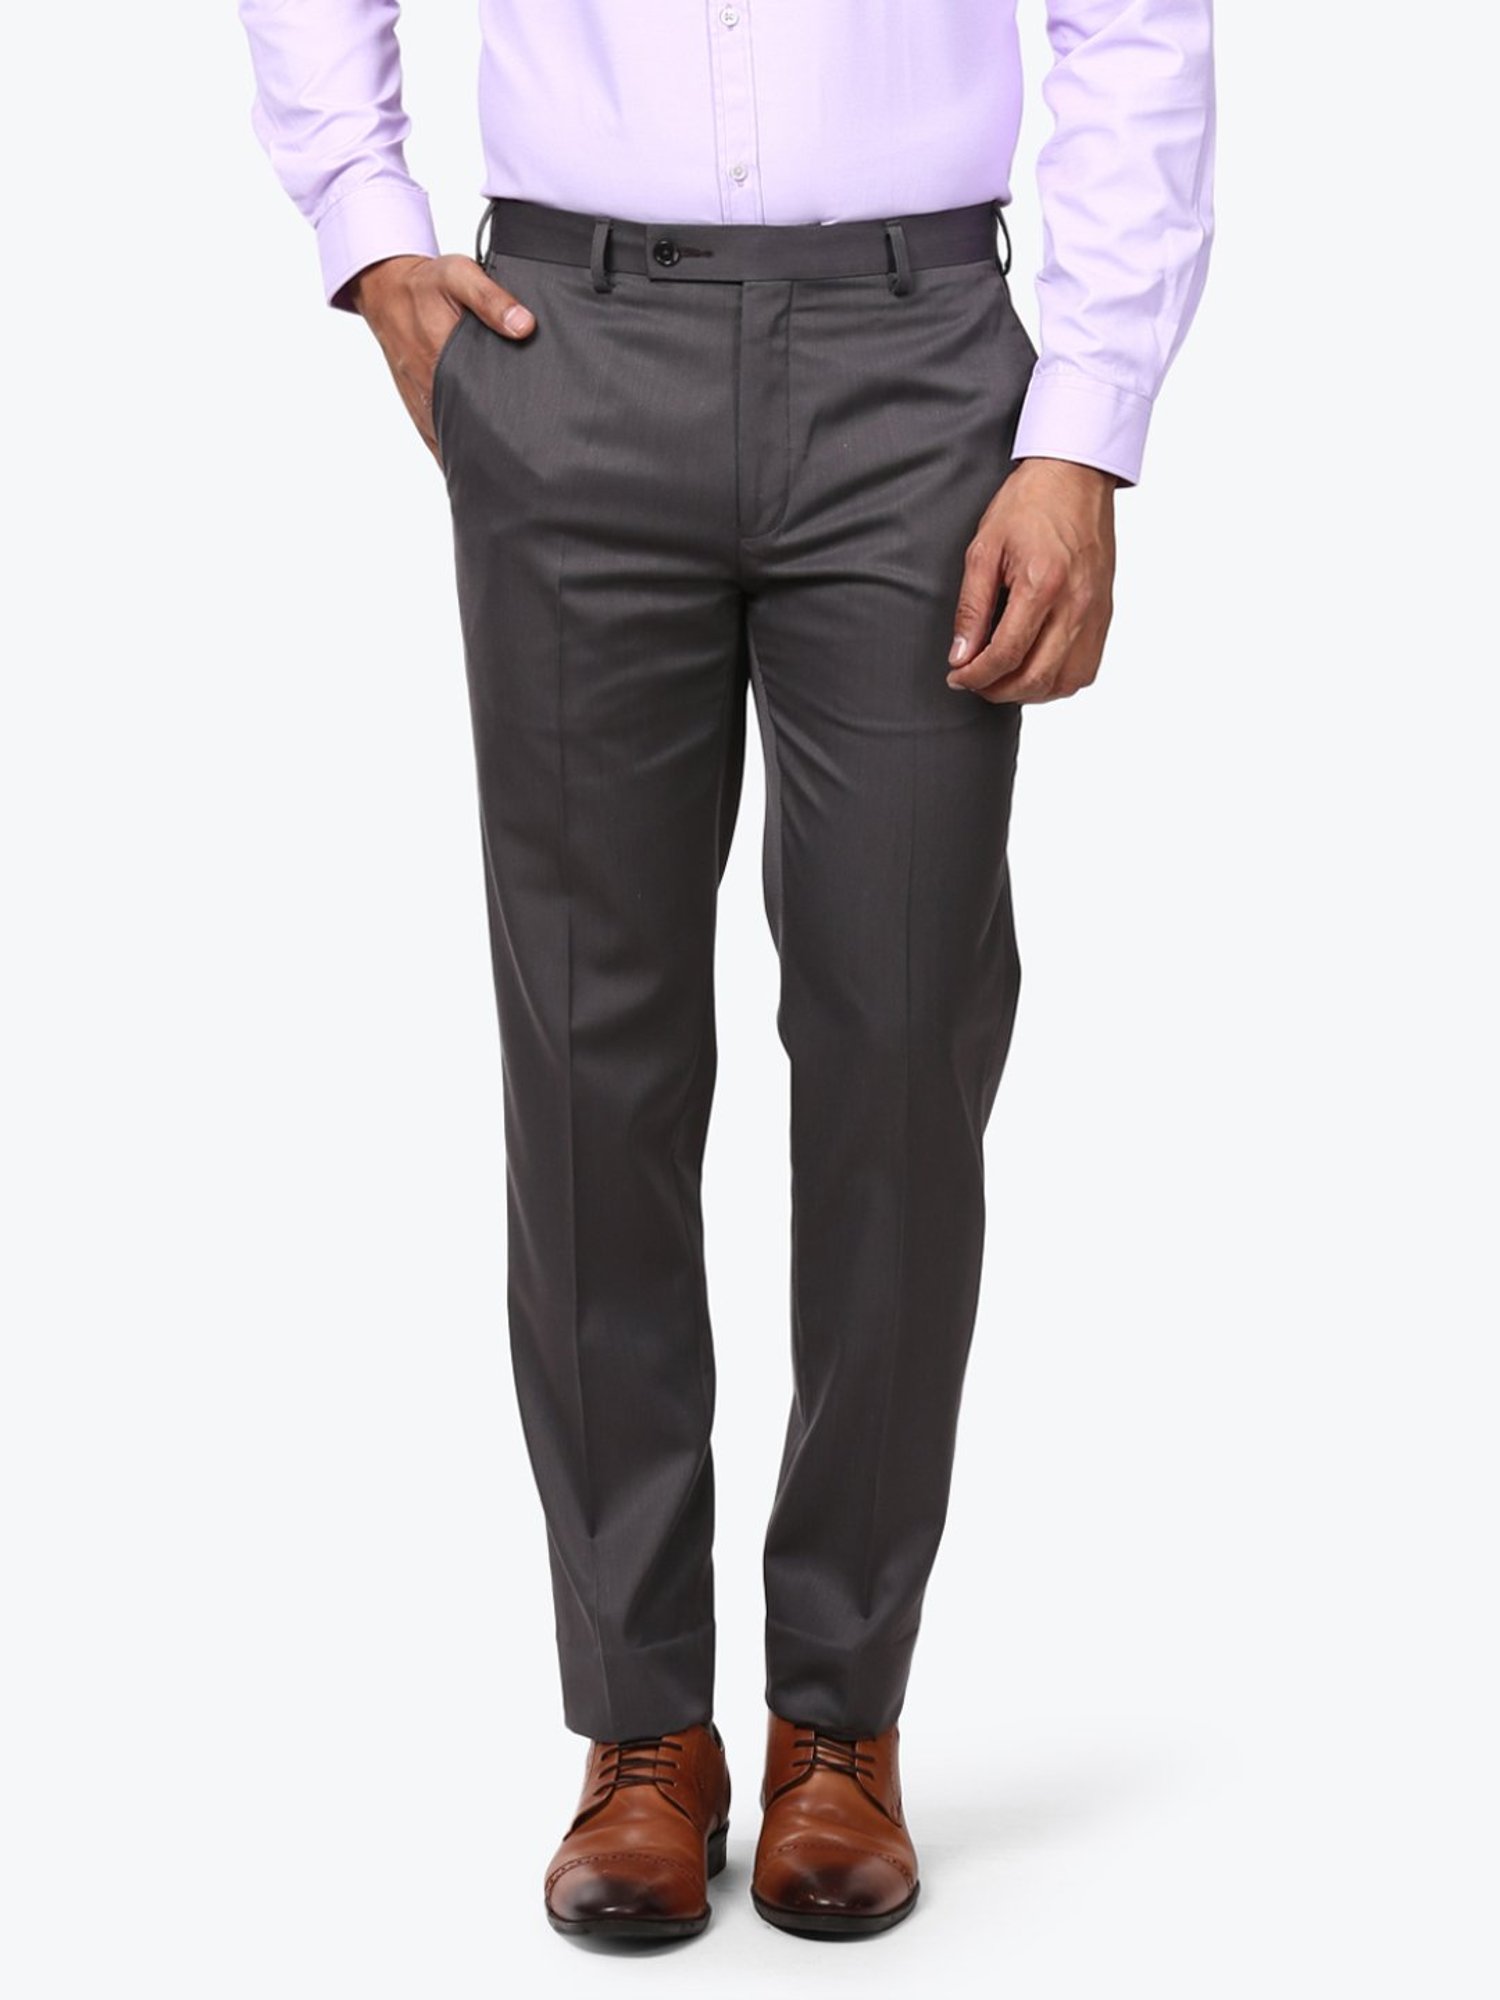 Buy Next Look Dark Grey Regular Fit Trousers for Mens Online  Tata CLiQ